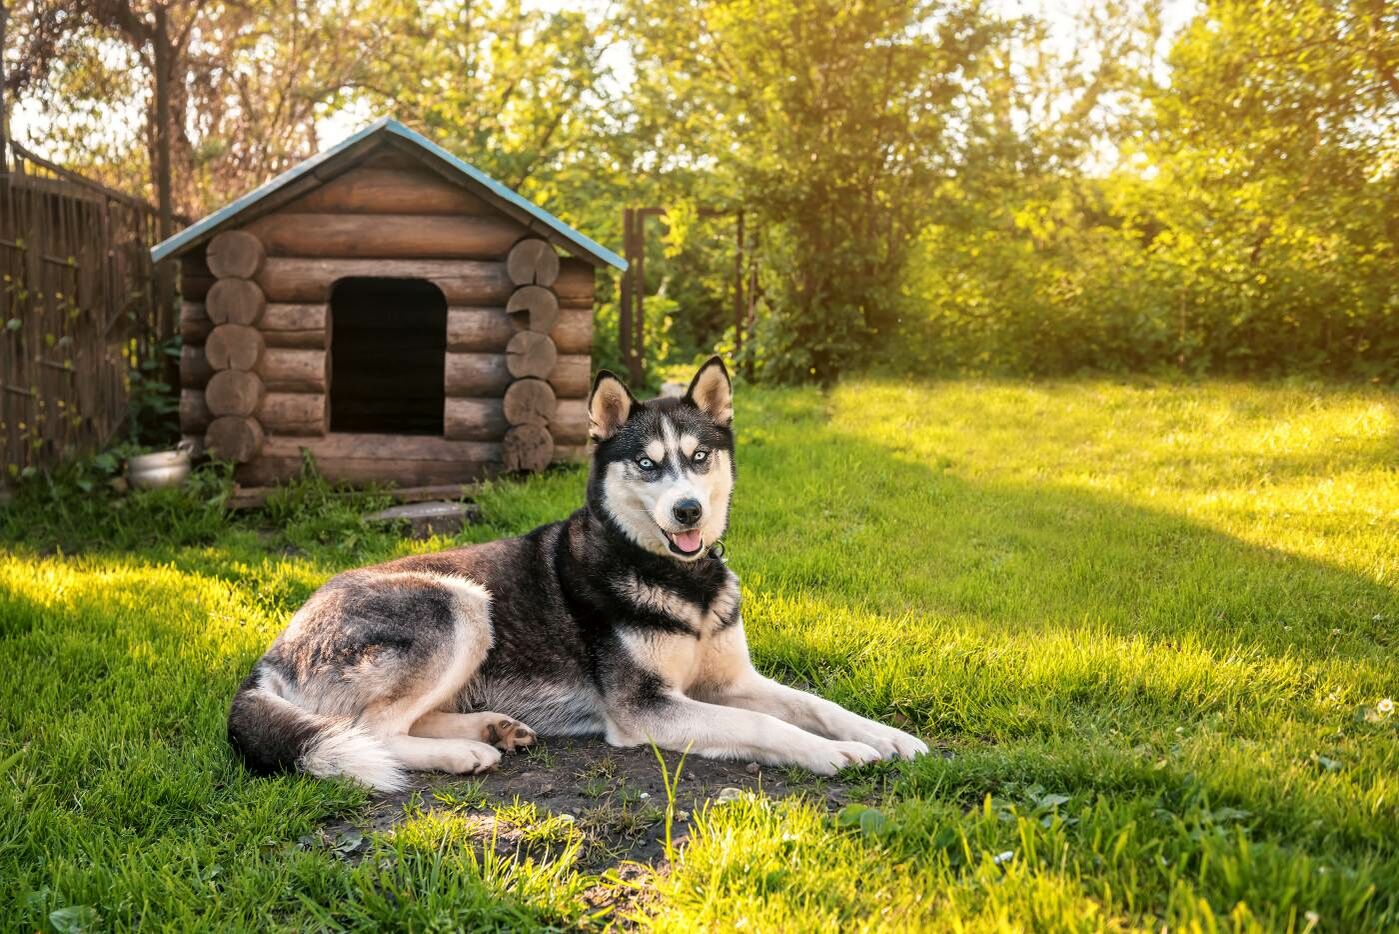 Ausgewachsener Husky liegt vor einer Hundehütte auf einer grünen Wiese.